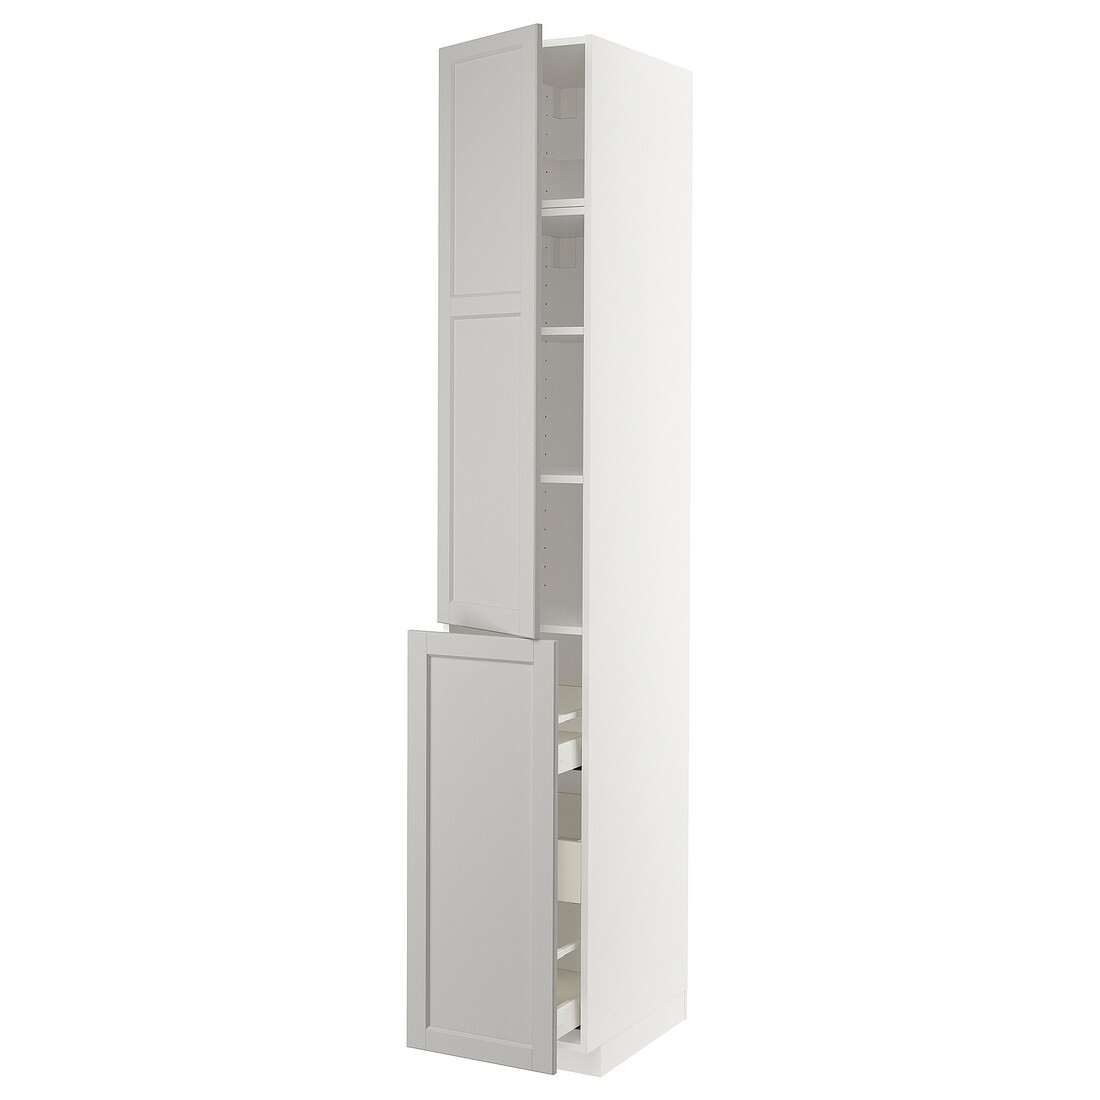 IKEA METOD МЕТОД / MAXIMERA МАКСИМЕРА Высокий шкаф 3 ящика / 1 дверь / 2 полки, белый / Lerhyttan светло-серый, 40x60x240 см 69462994 | 694.629.94